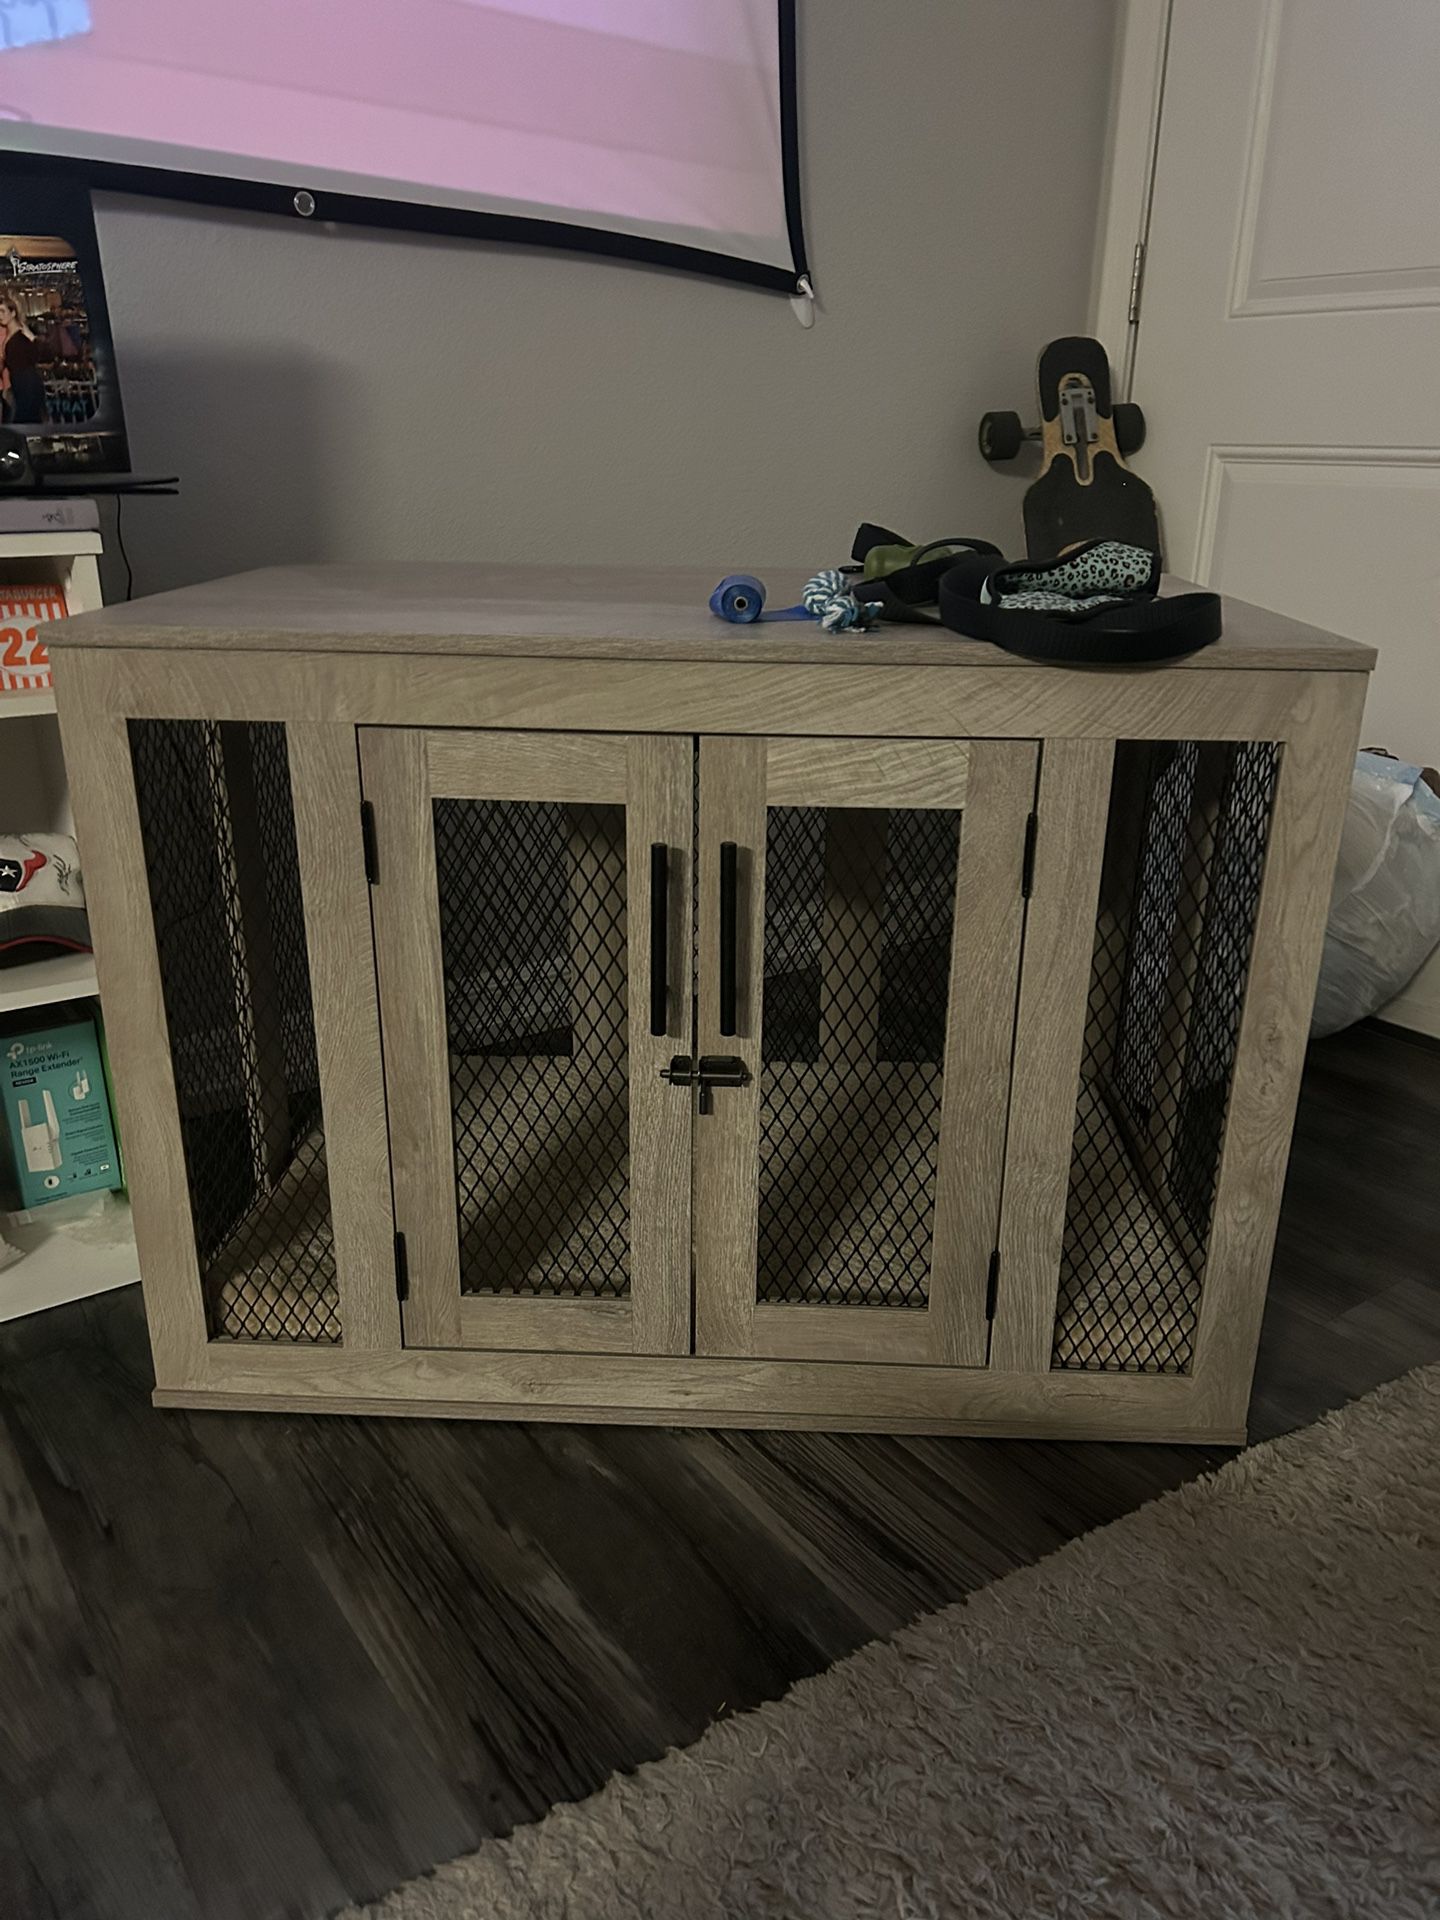 Designer Dog Cage / Crate 